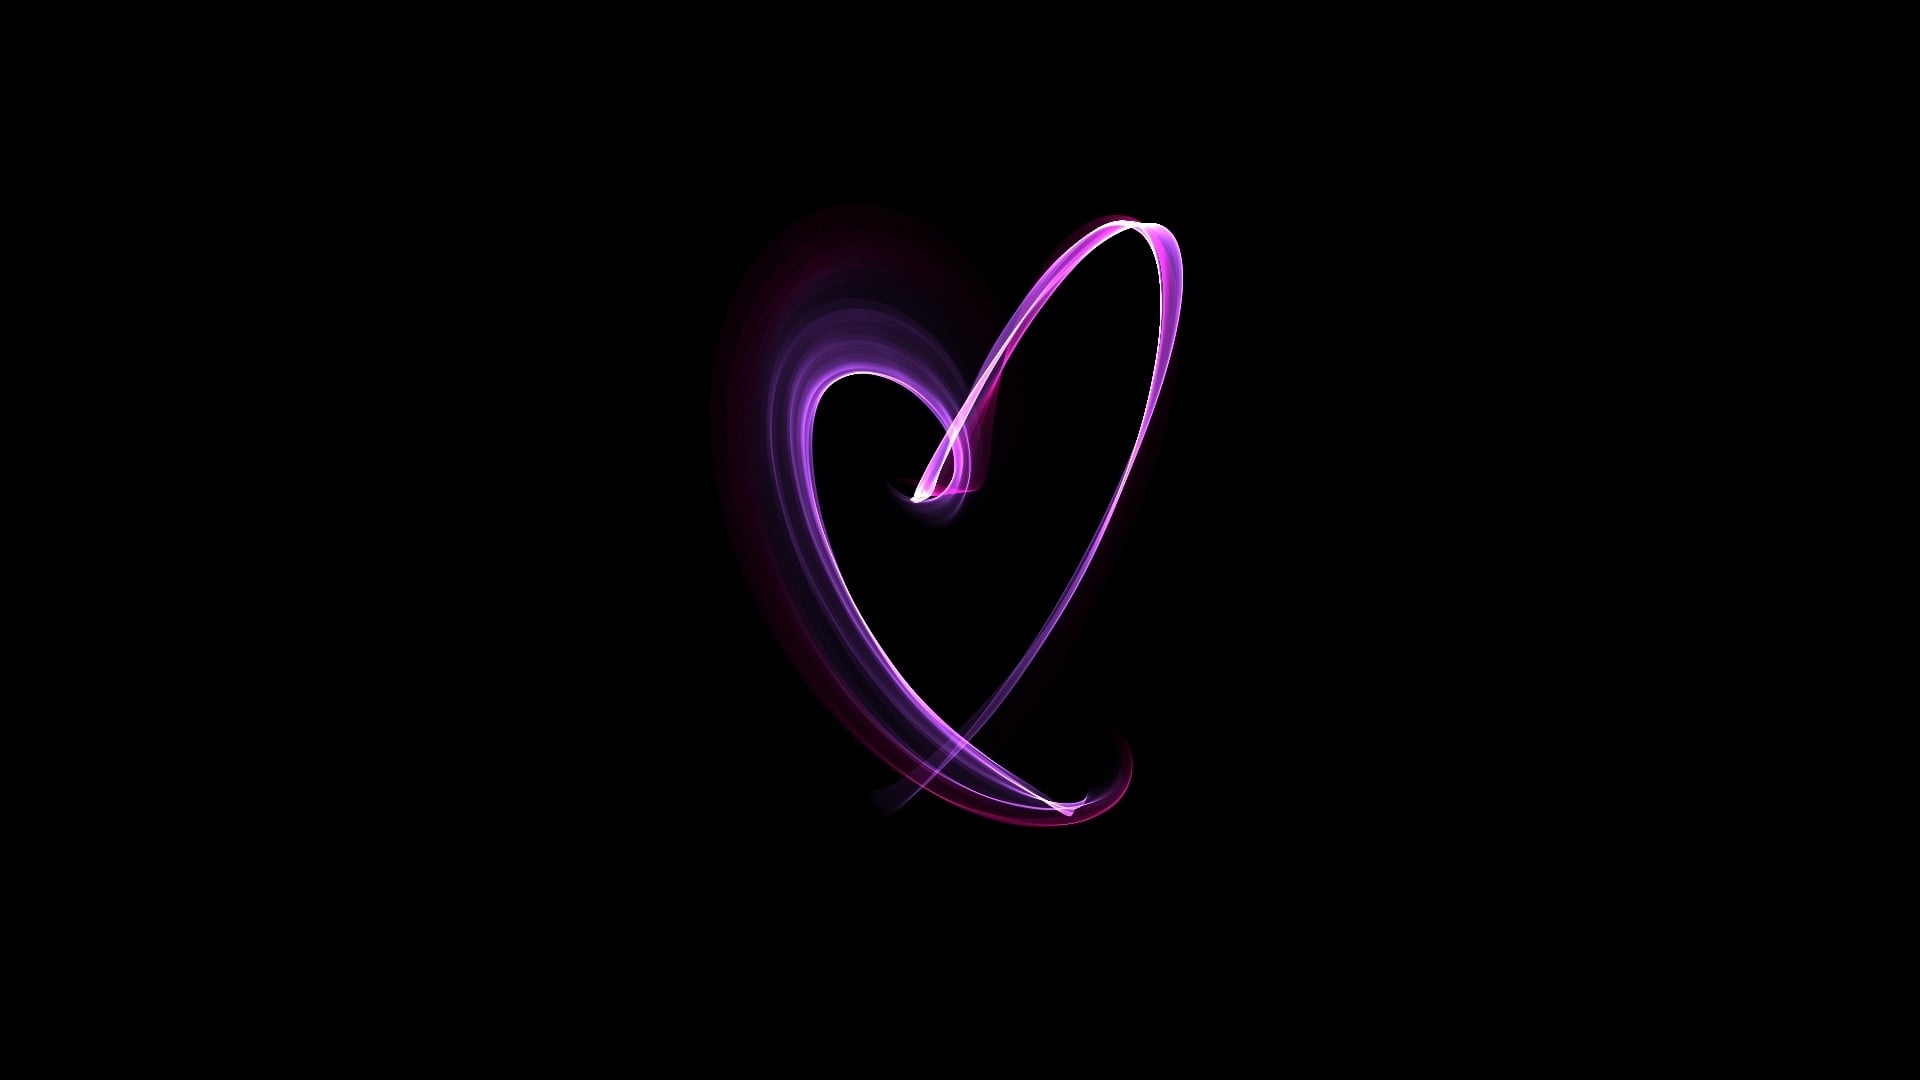 Hãy tô điểm cho không gian sống với màn hình nền Laptop Purple Heart Light Decor Wallpaper. Bức ảnh với sự kết hợp giữa ánh sáng và trái tim tím sẽ mang lại sự ấm áp và tràn đầy tình yêu cho mọi người.